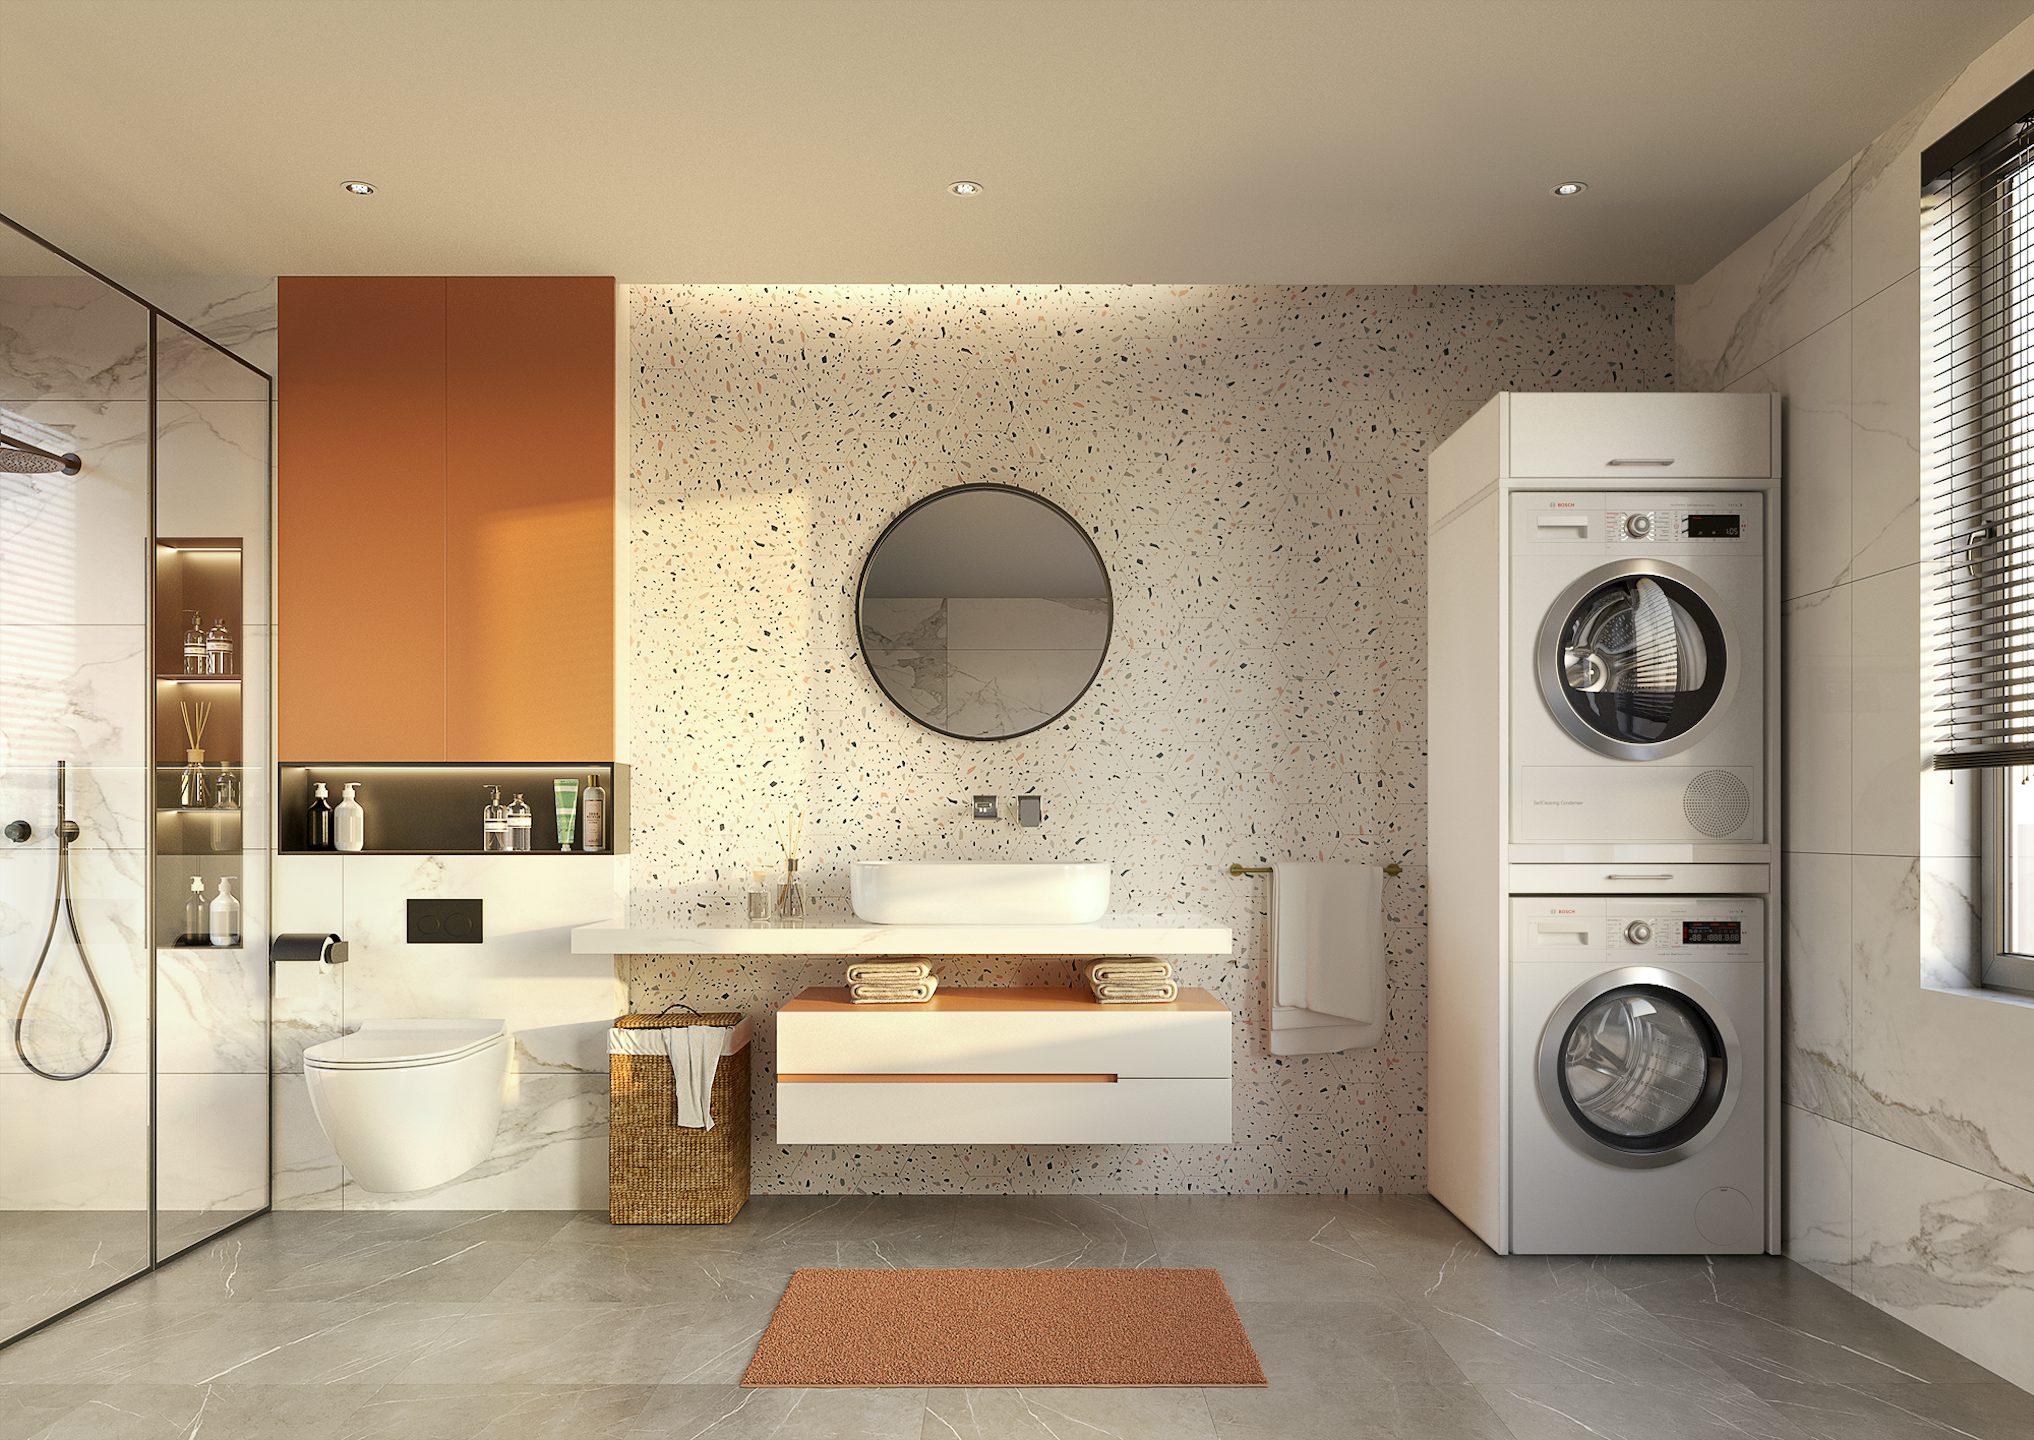 Met deze kast indeling voor een washok of wasruimte creeer je een ideale wasplaats voor je badkamer. Combineer het wasmeubel met de wasmachine kast en creeer een samenhangende uitstraling